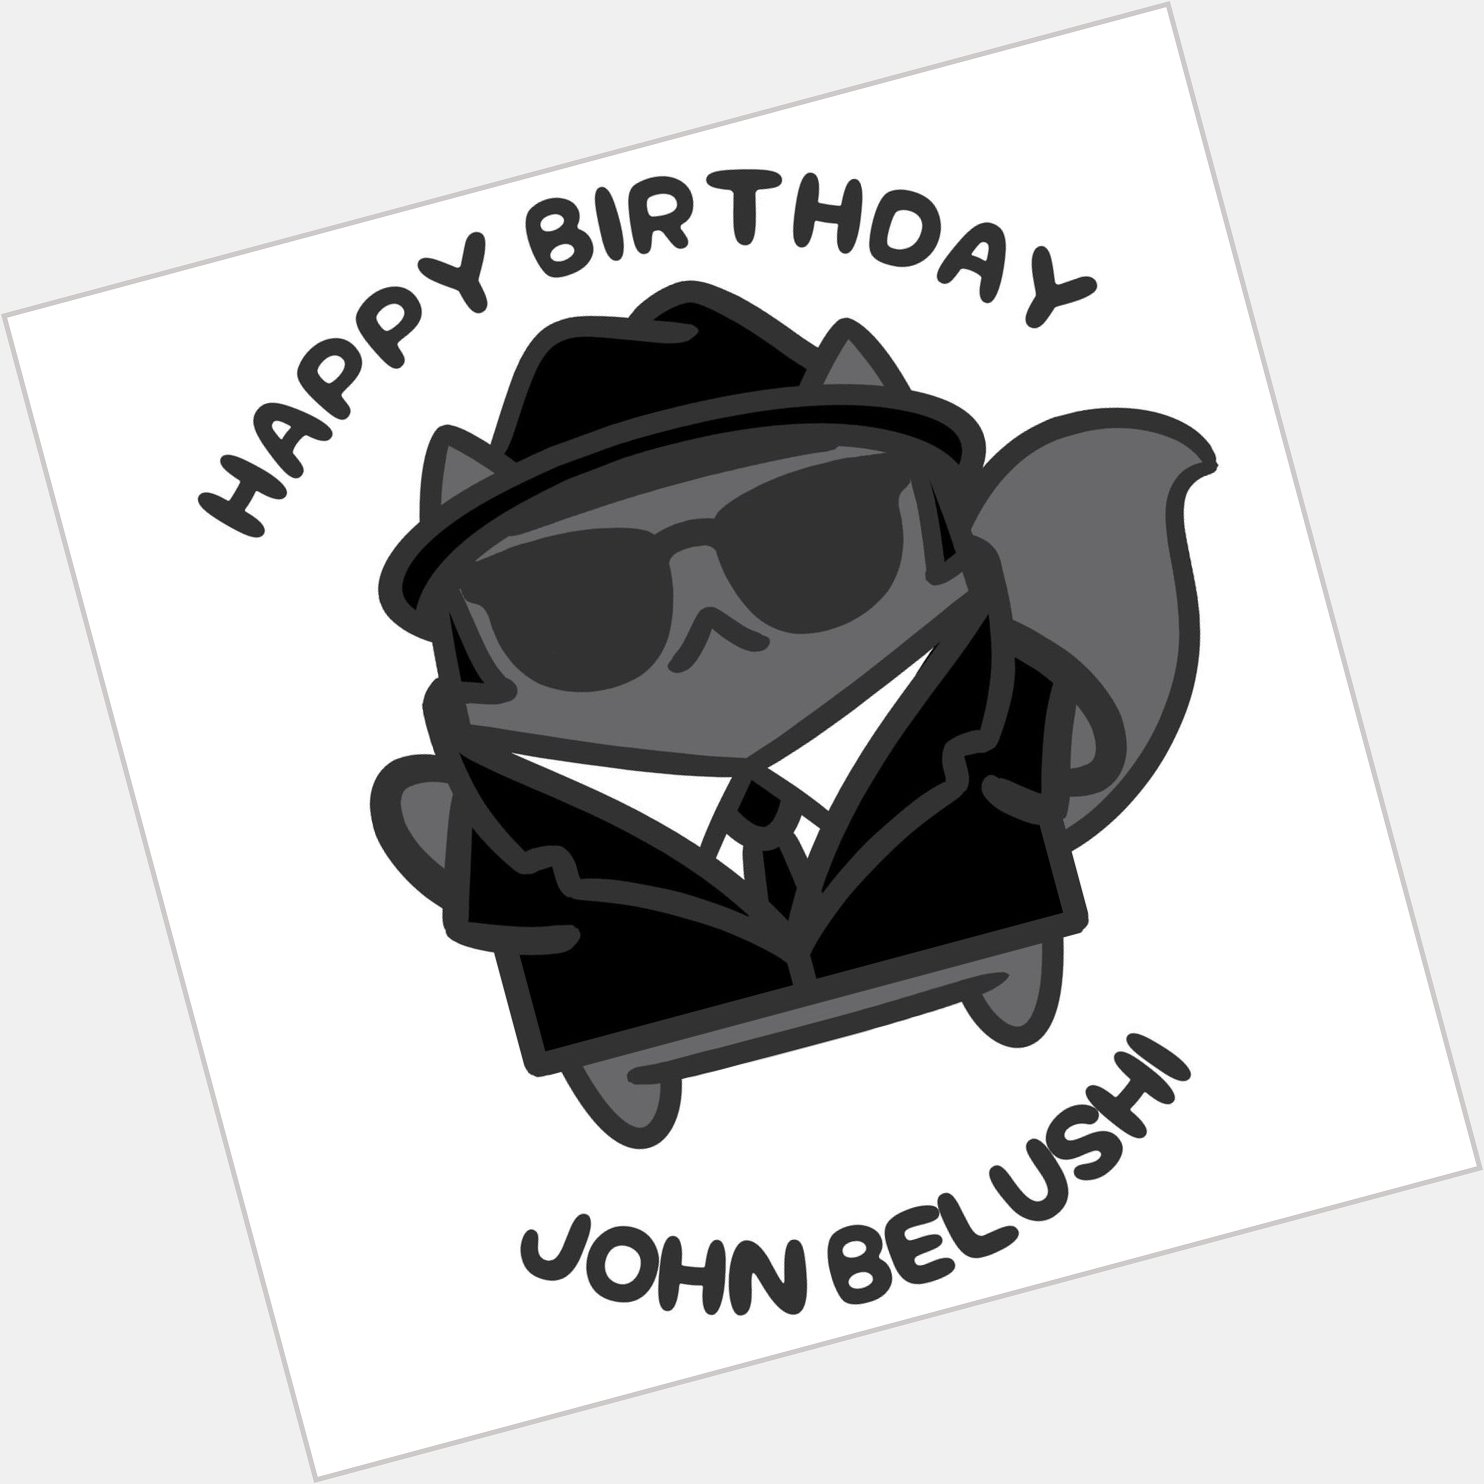 Happy Birthday, John Belushi!  